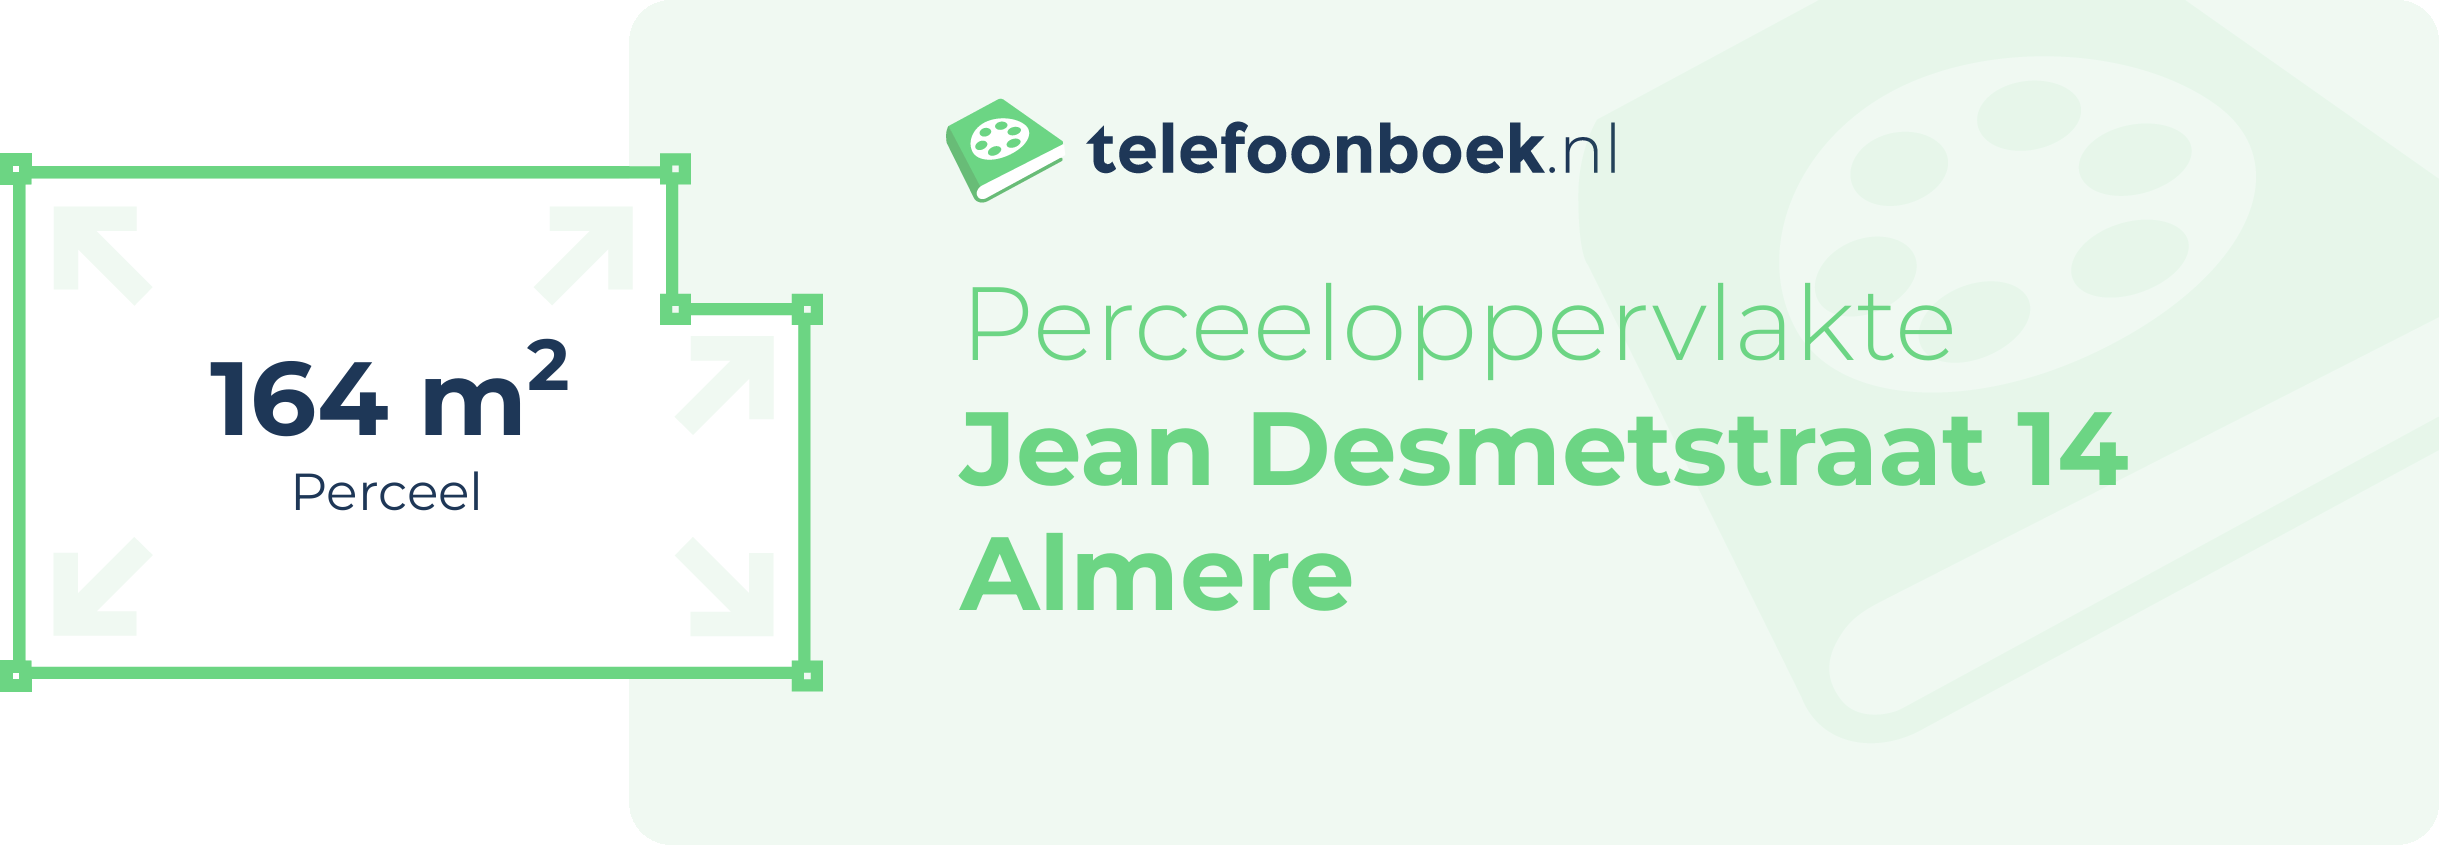 Perceeloppervlakte Jean Desmetstraat 14 Almere